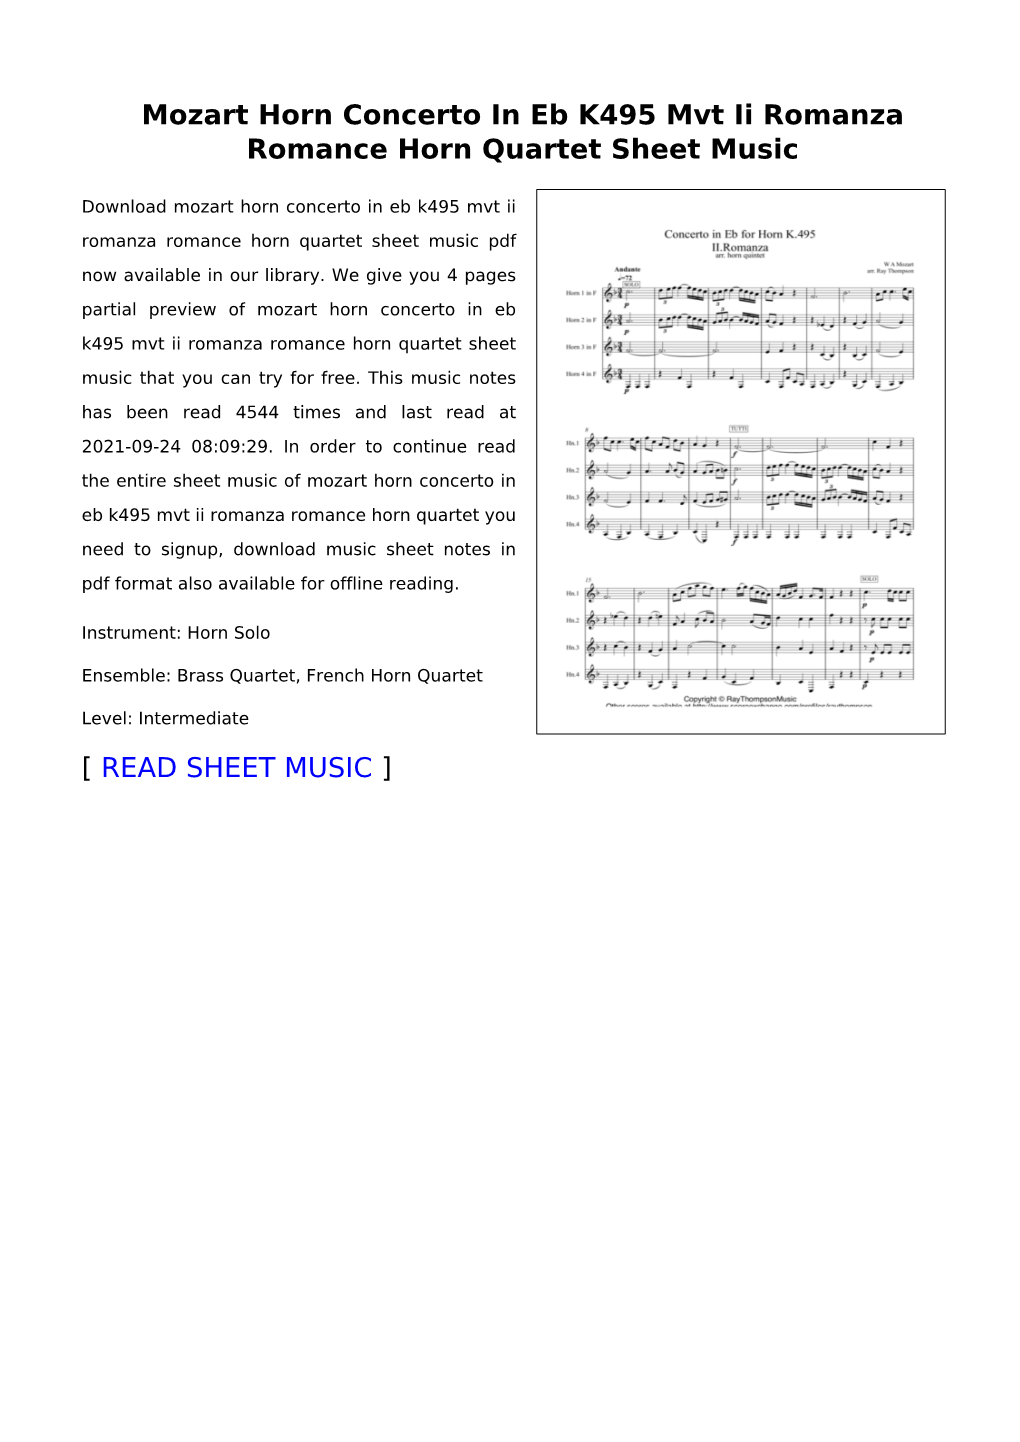 Mozart Horn Concerto in Eb K495 Mvt Ii Romanza Romance Horn Quartet Sheet Music